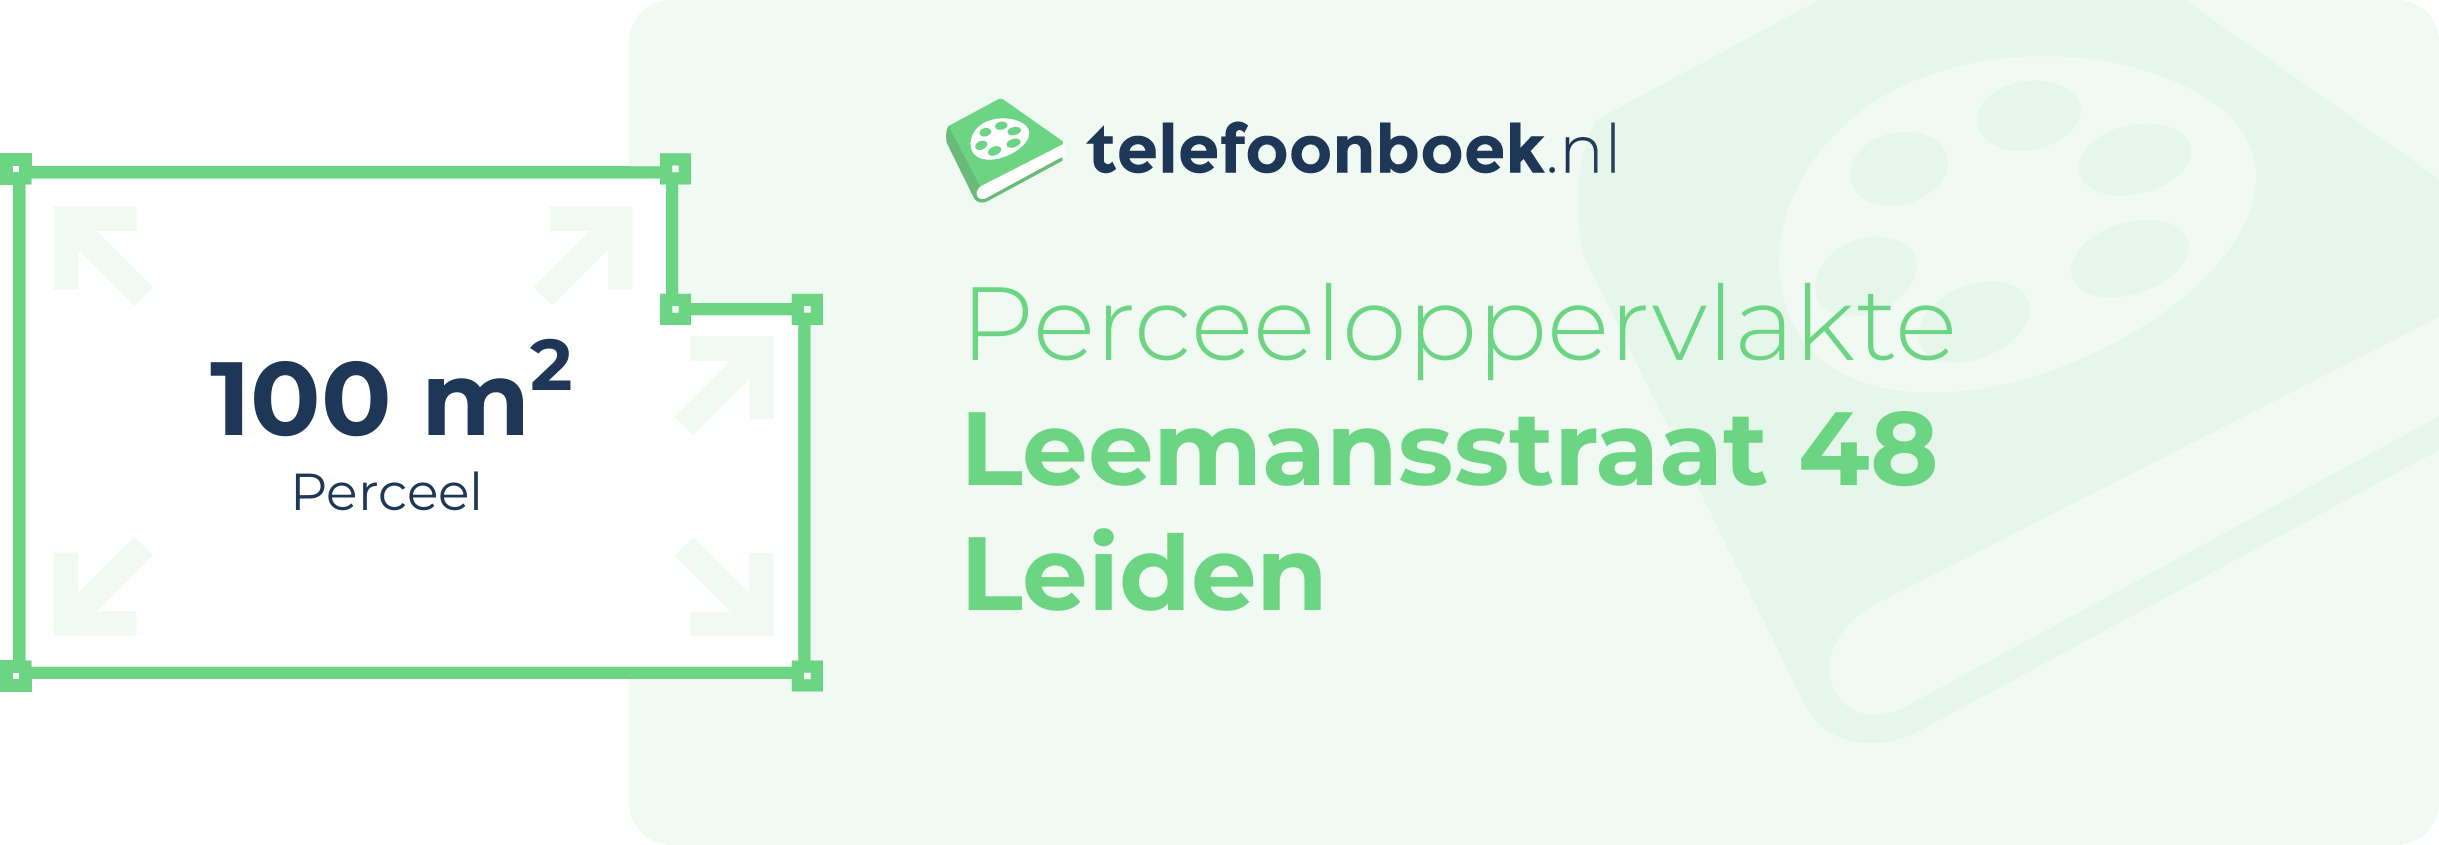 Perceeloppervlakte Leemansstraat 48 Leiden